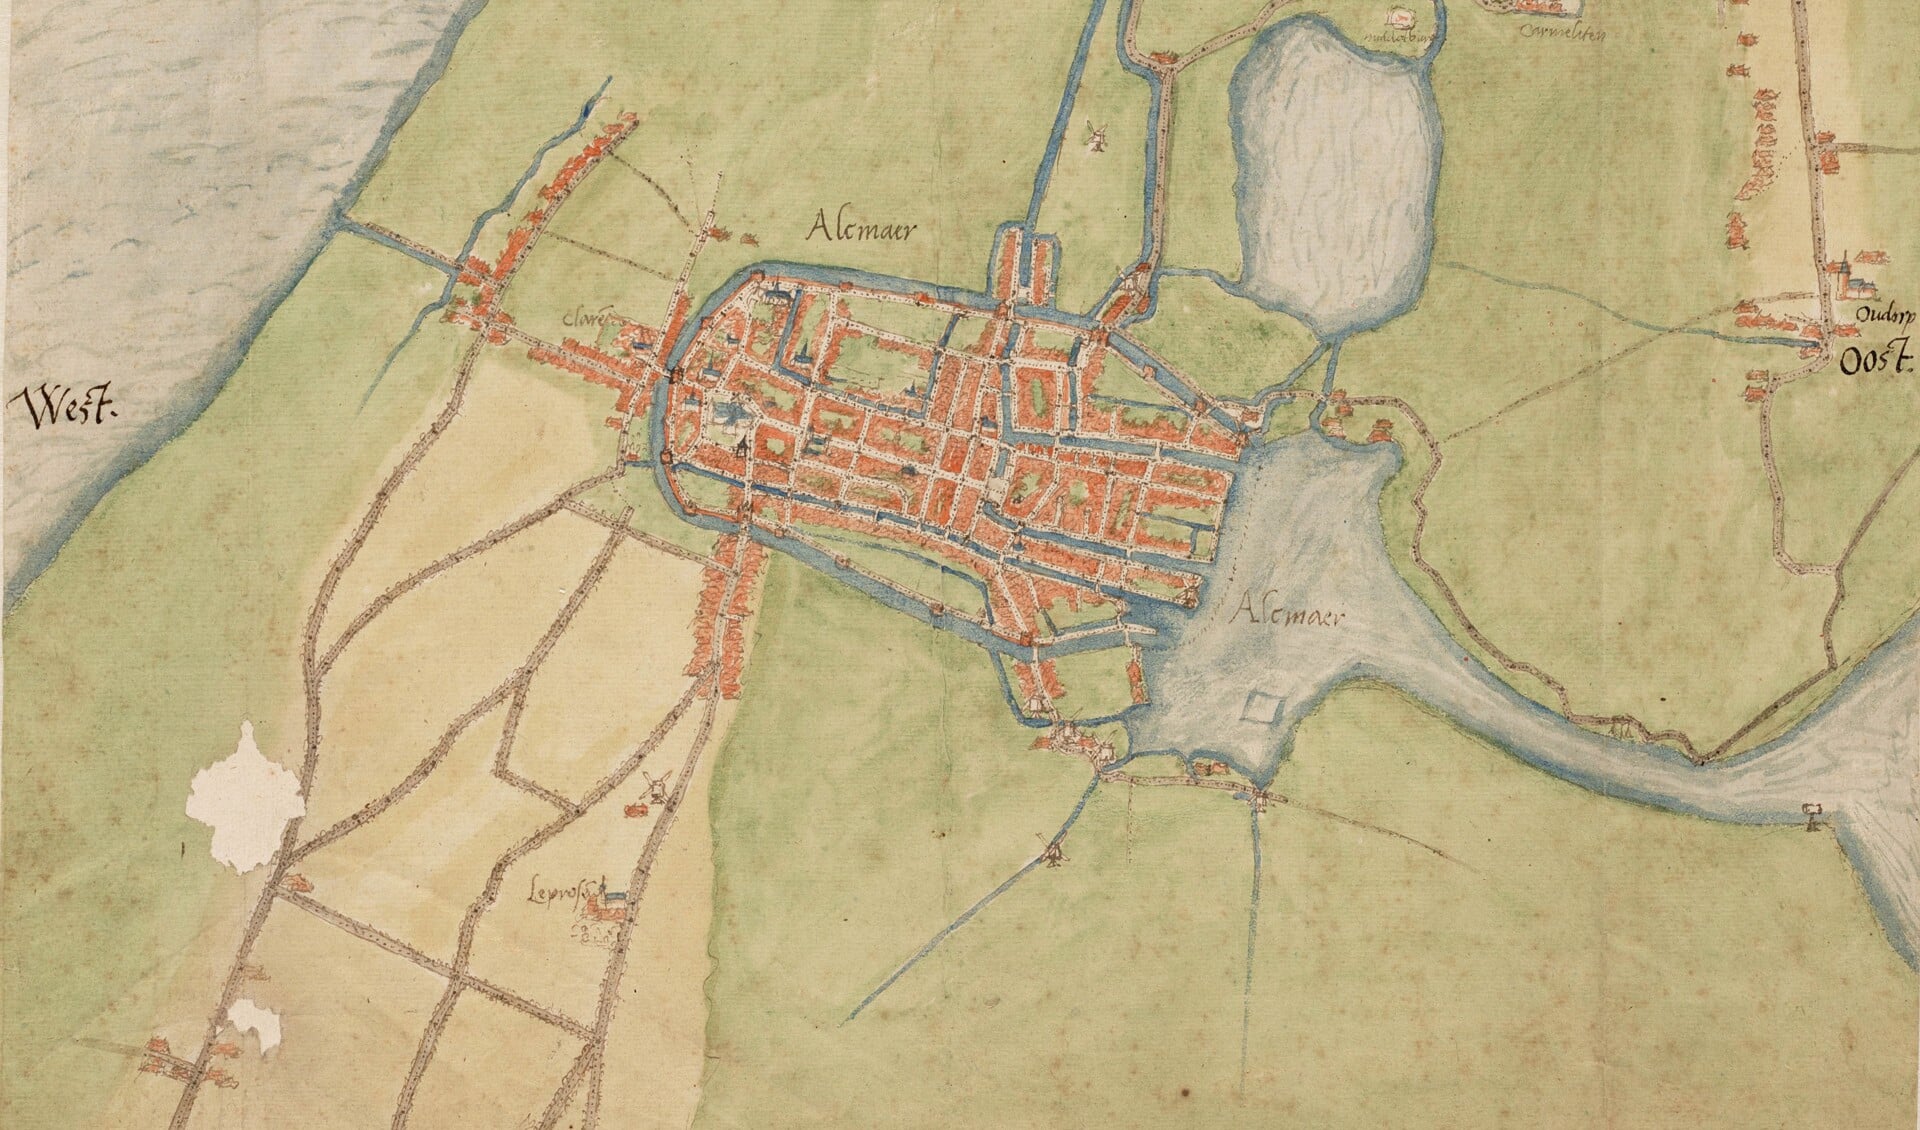 Historische kaarten centraal tijdens Historisch Café te Alkmaar. (Foto: aangeleverd)